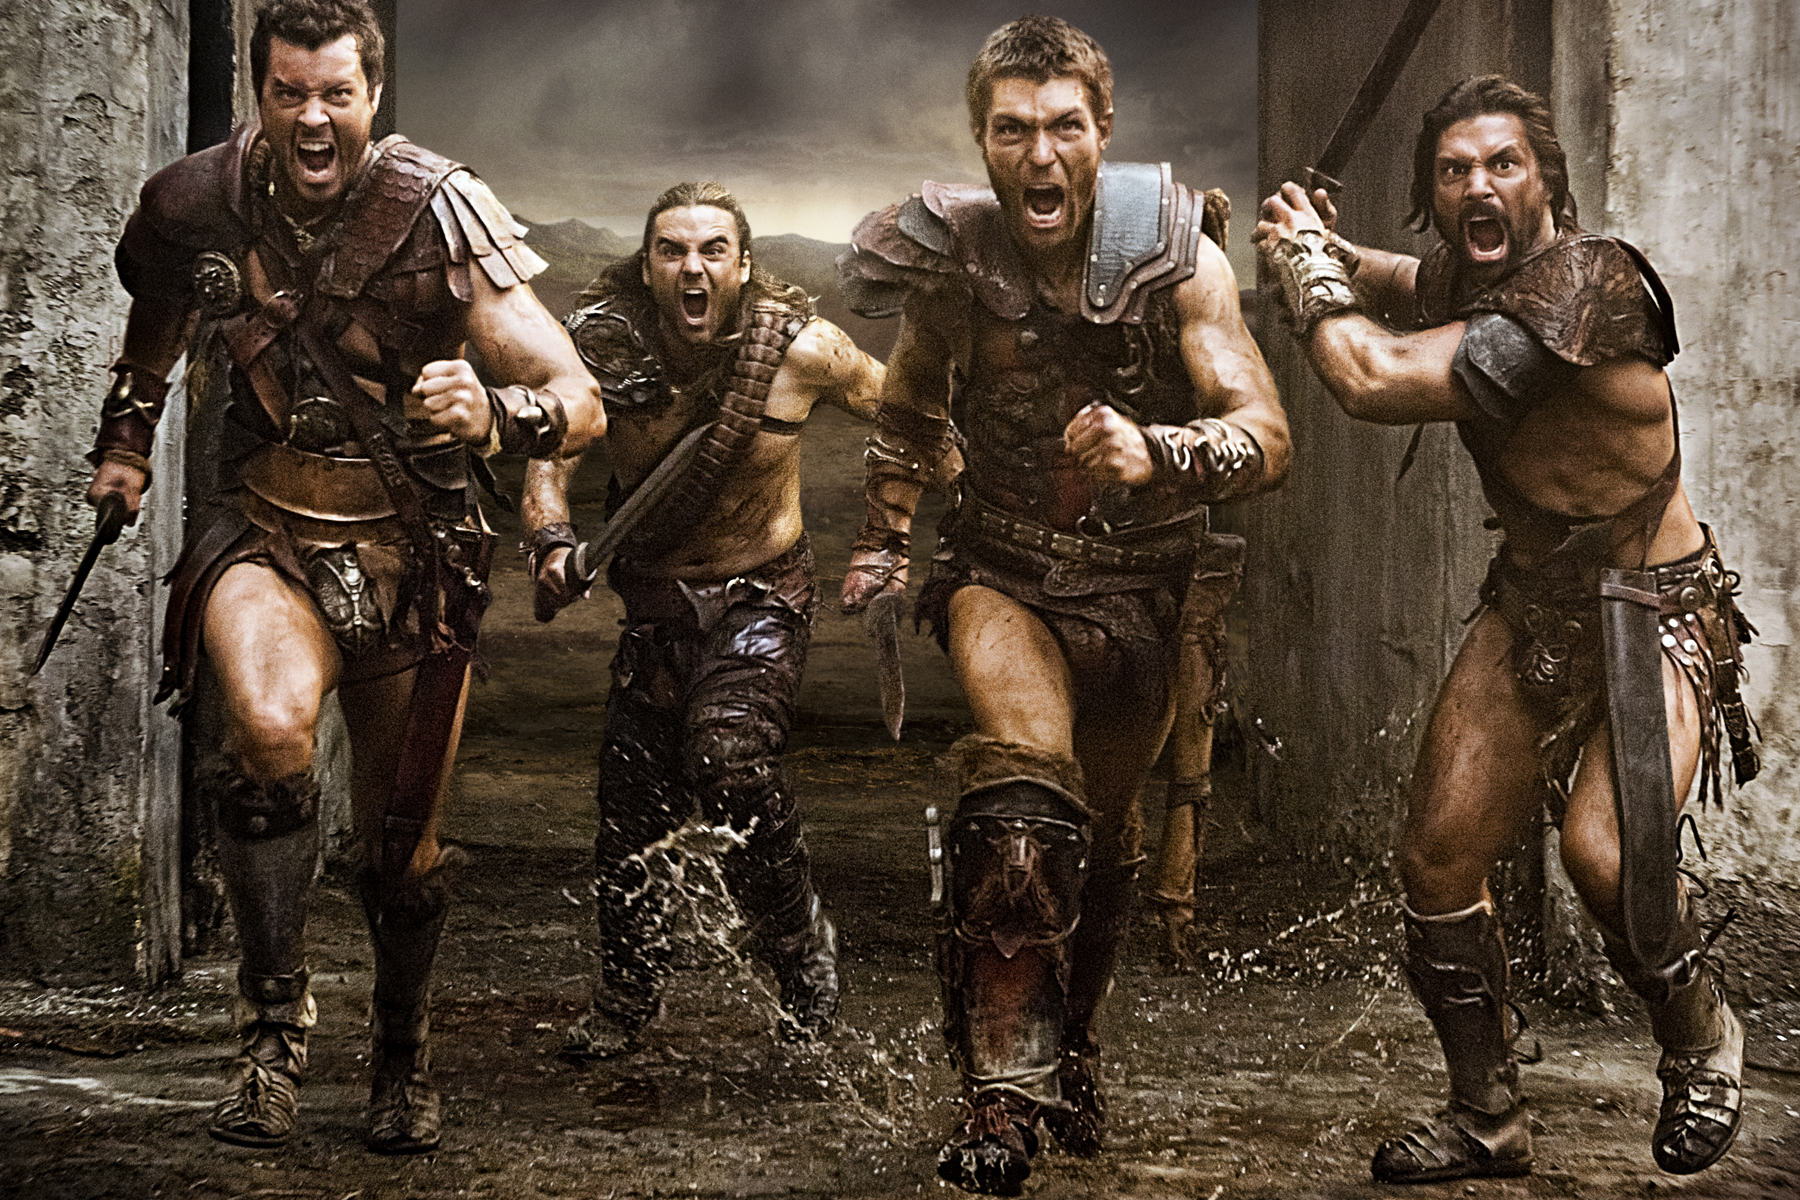 Spartacus Cast